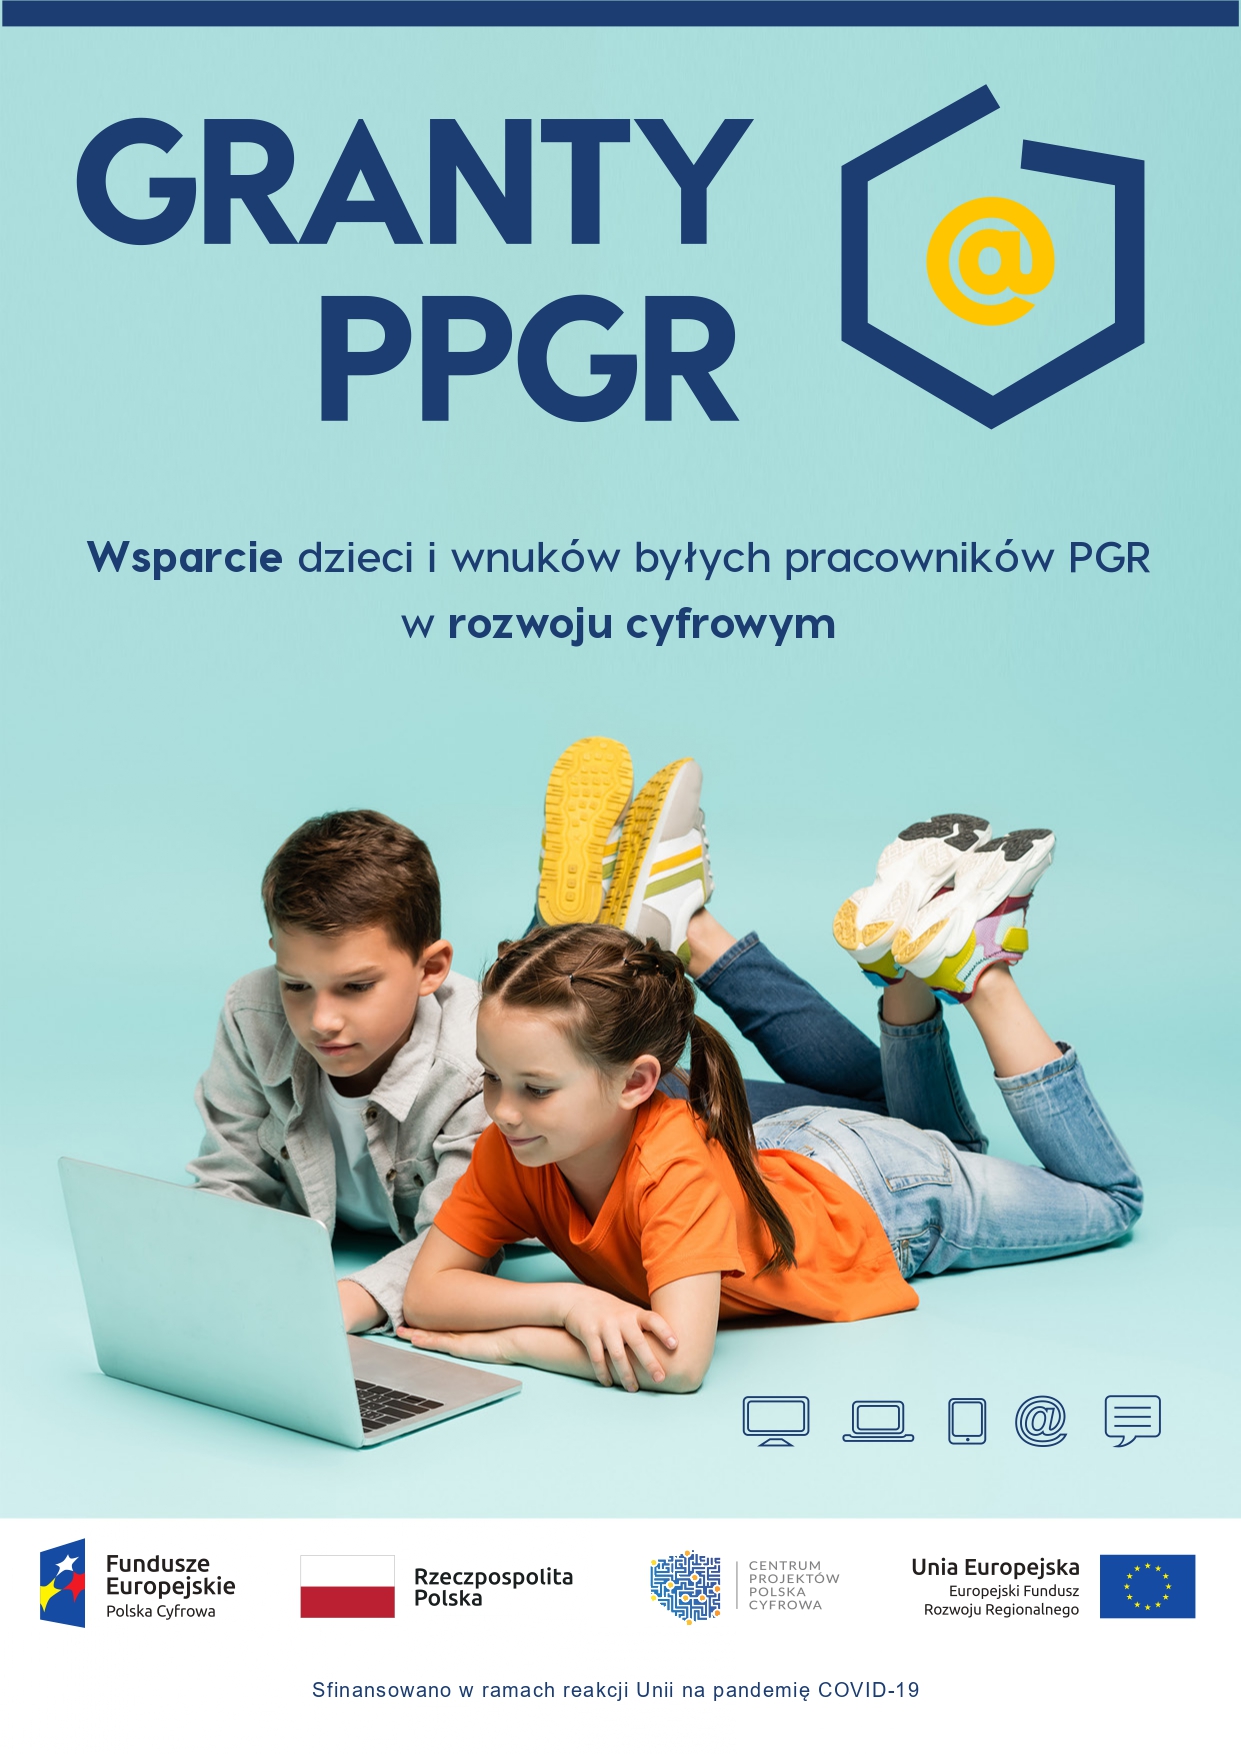 Granty PPGR – Oświadczenie